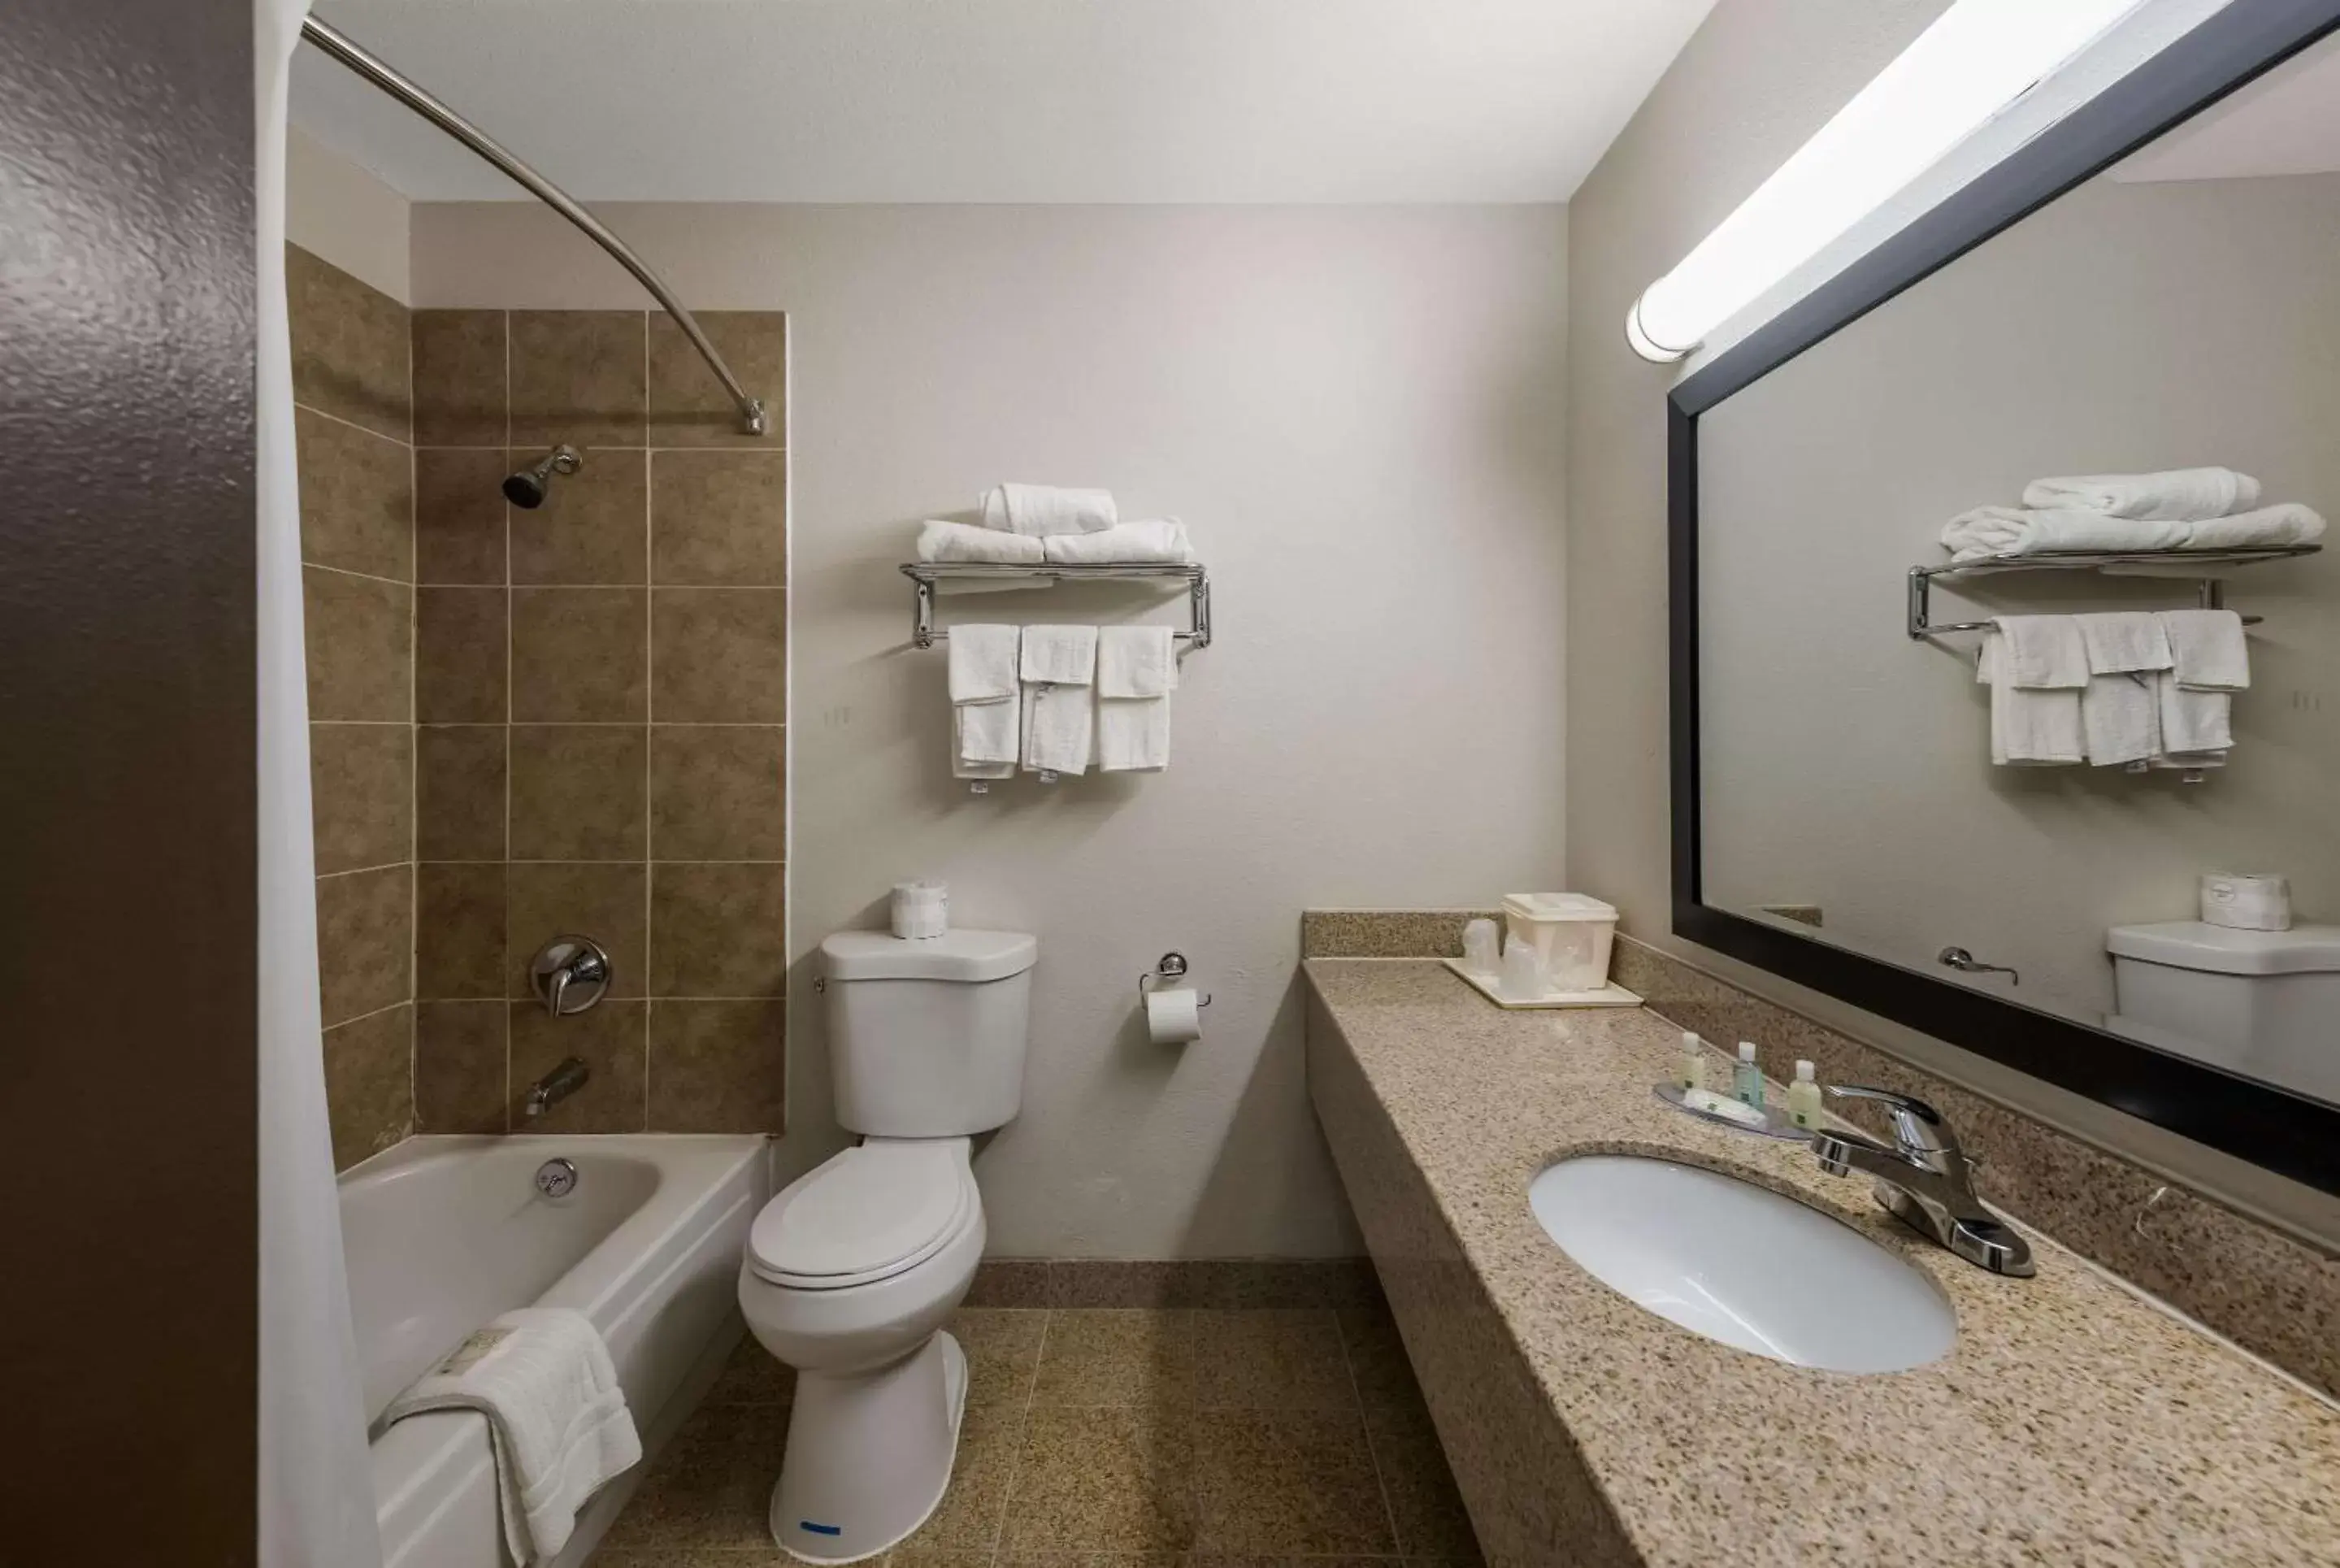 Bedroom, Bathroom in Quality Inn Airport